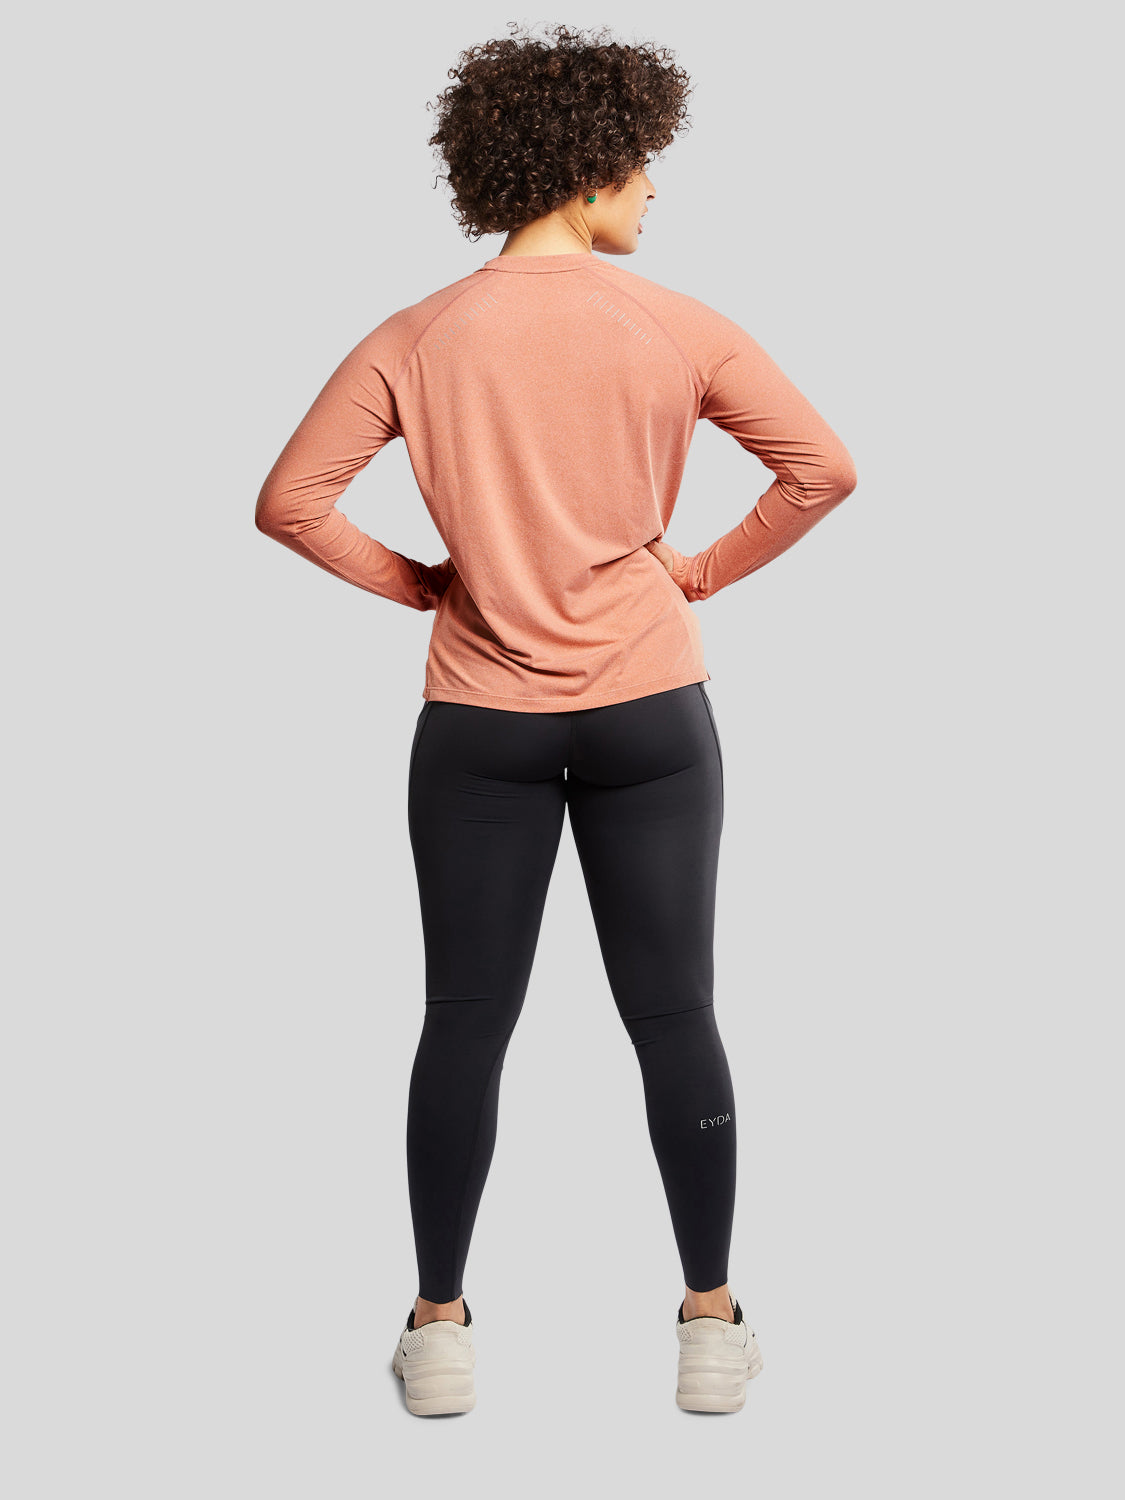 kvinde bagfra med træningstrøje i farven rust